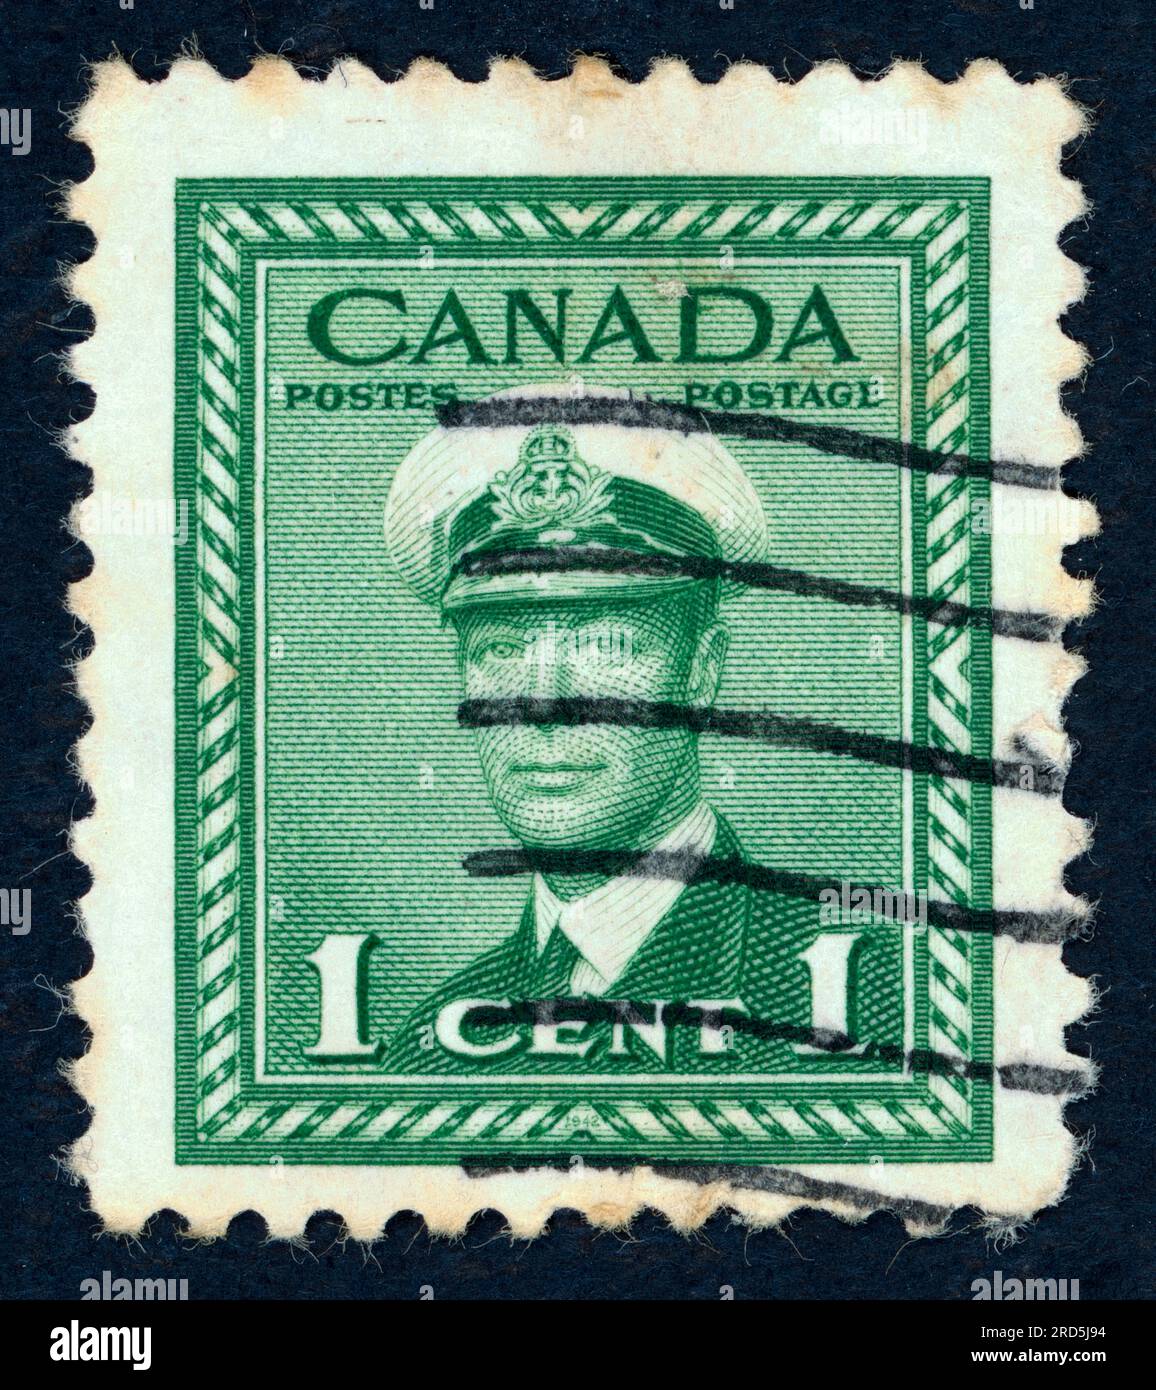 George VI. (Albert Frederick Arthur George; 1895–1952), König des Vereinigten Königreichs und der Dominions des British Commonwealth von 1936 bis zu seinem Tod 1952. Briefmarke, ausgestellt in Kanada im Jahr 1948. Stockfoto